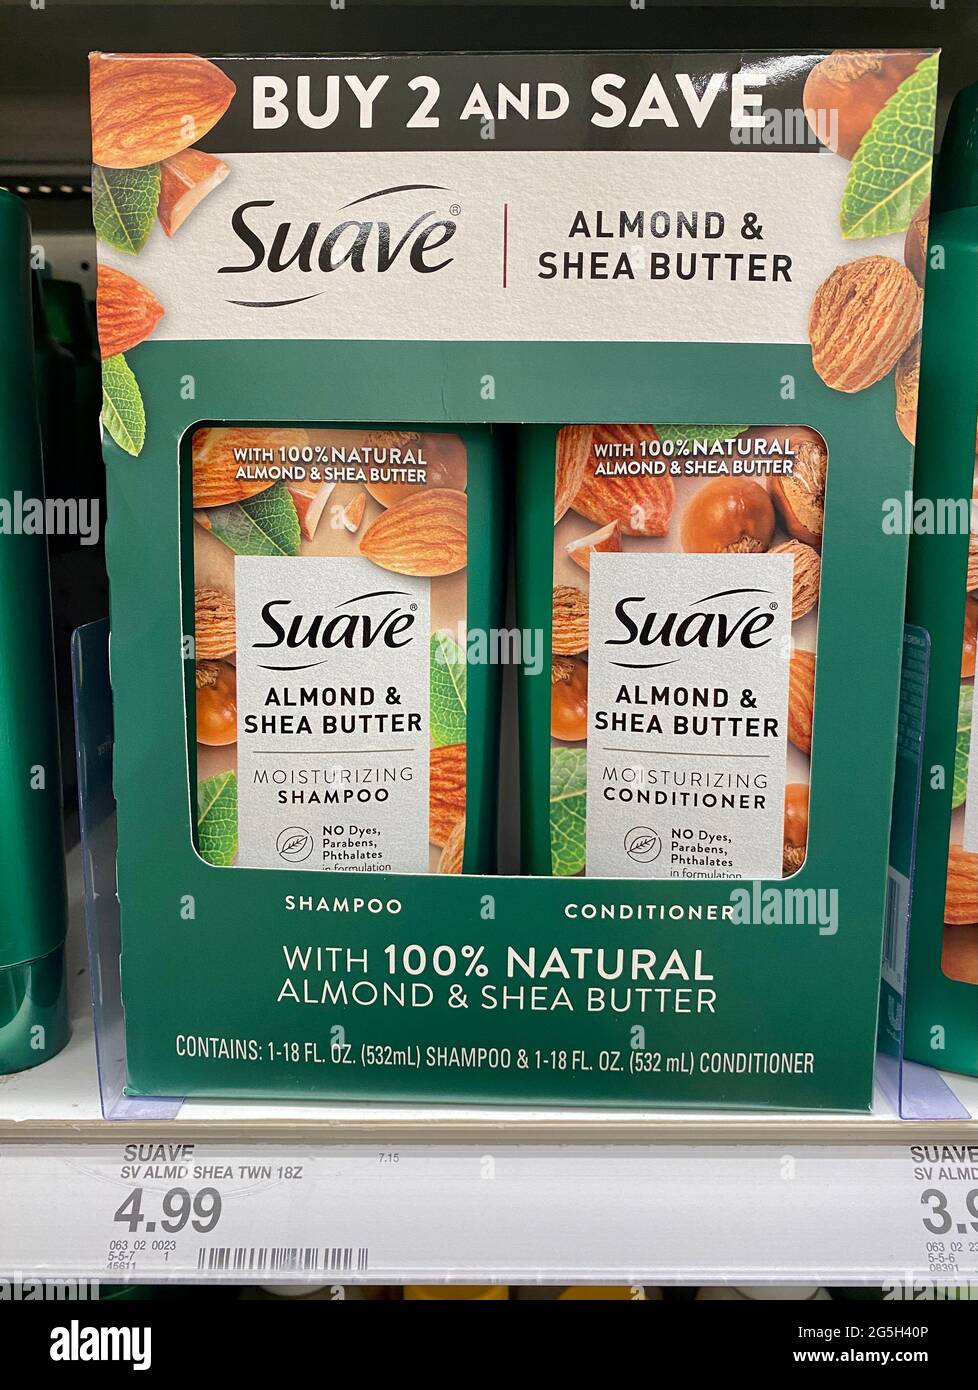 Bundle Pack von Suave Almond und Shea Butter Shampoo und Conditioner in Target Stores verkauft. Stockfoto